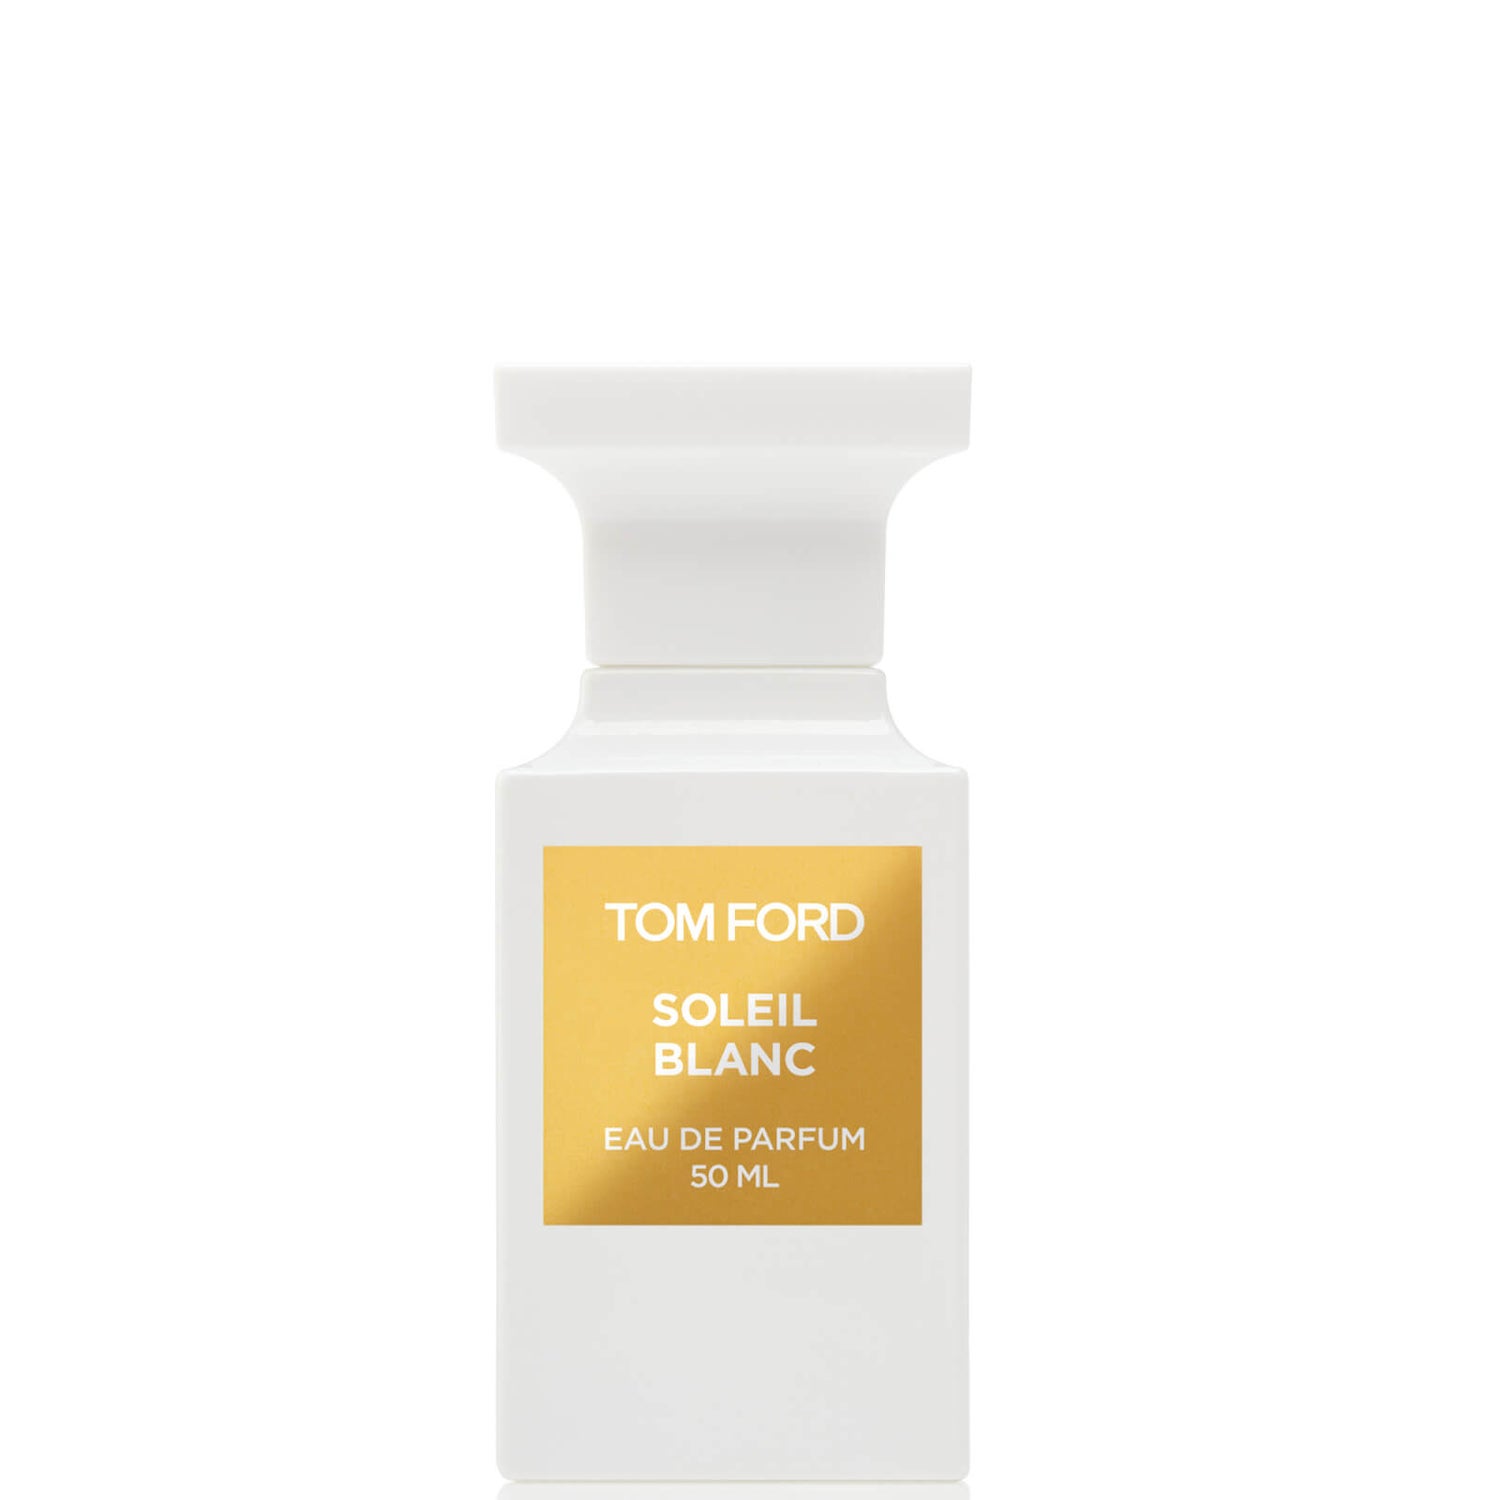 Tom Ford Soleil Blanc -- Eau de Parfum Spray - 50 ml